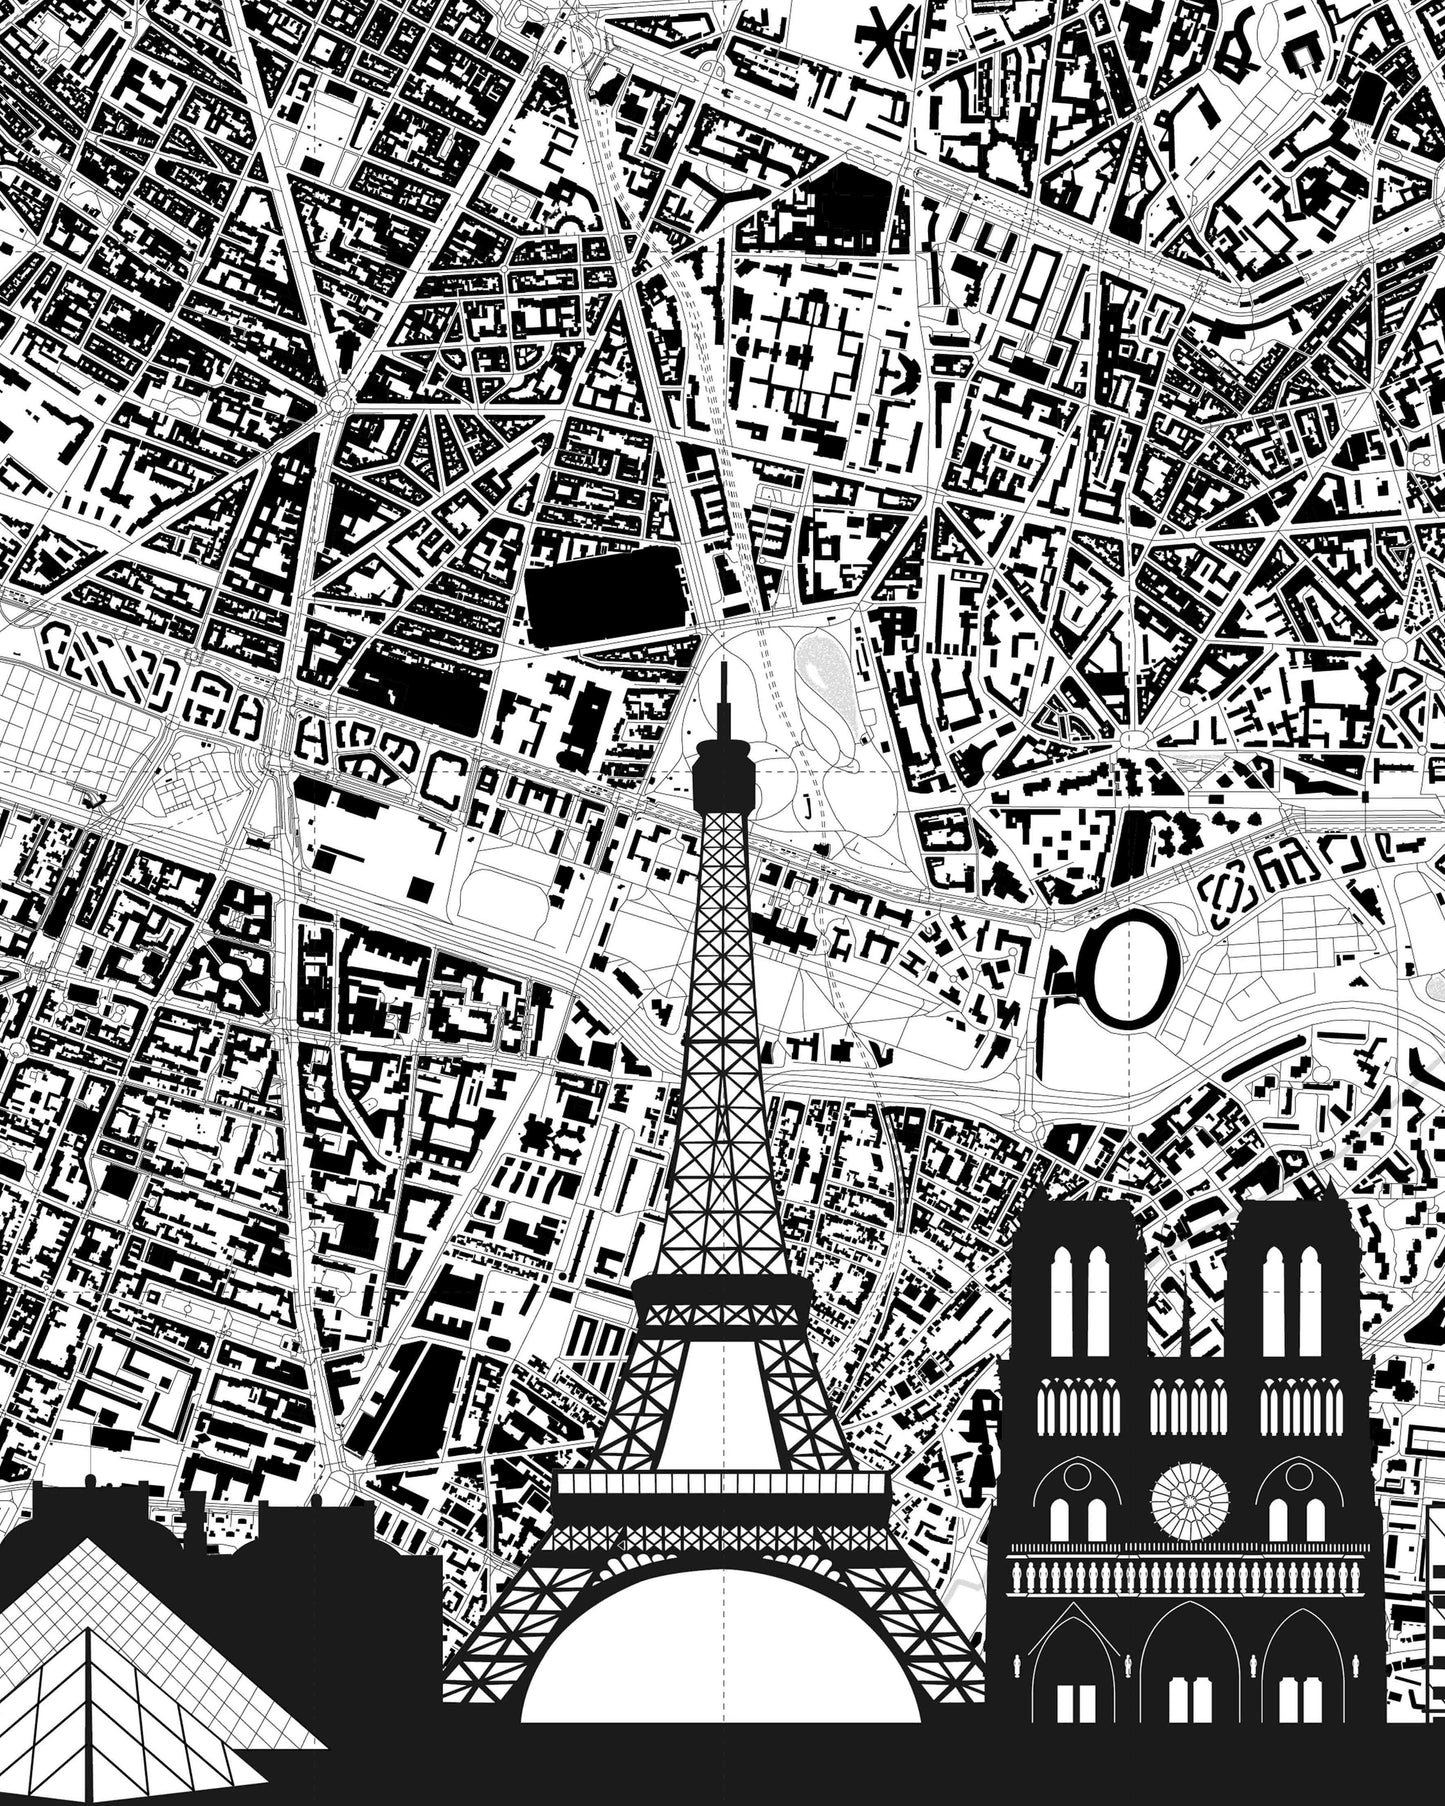 THE CITY: PARIS